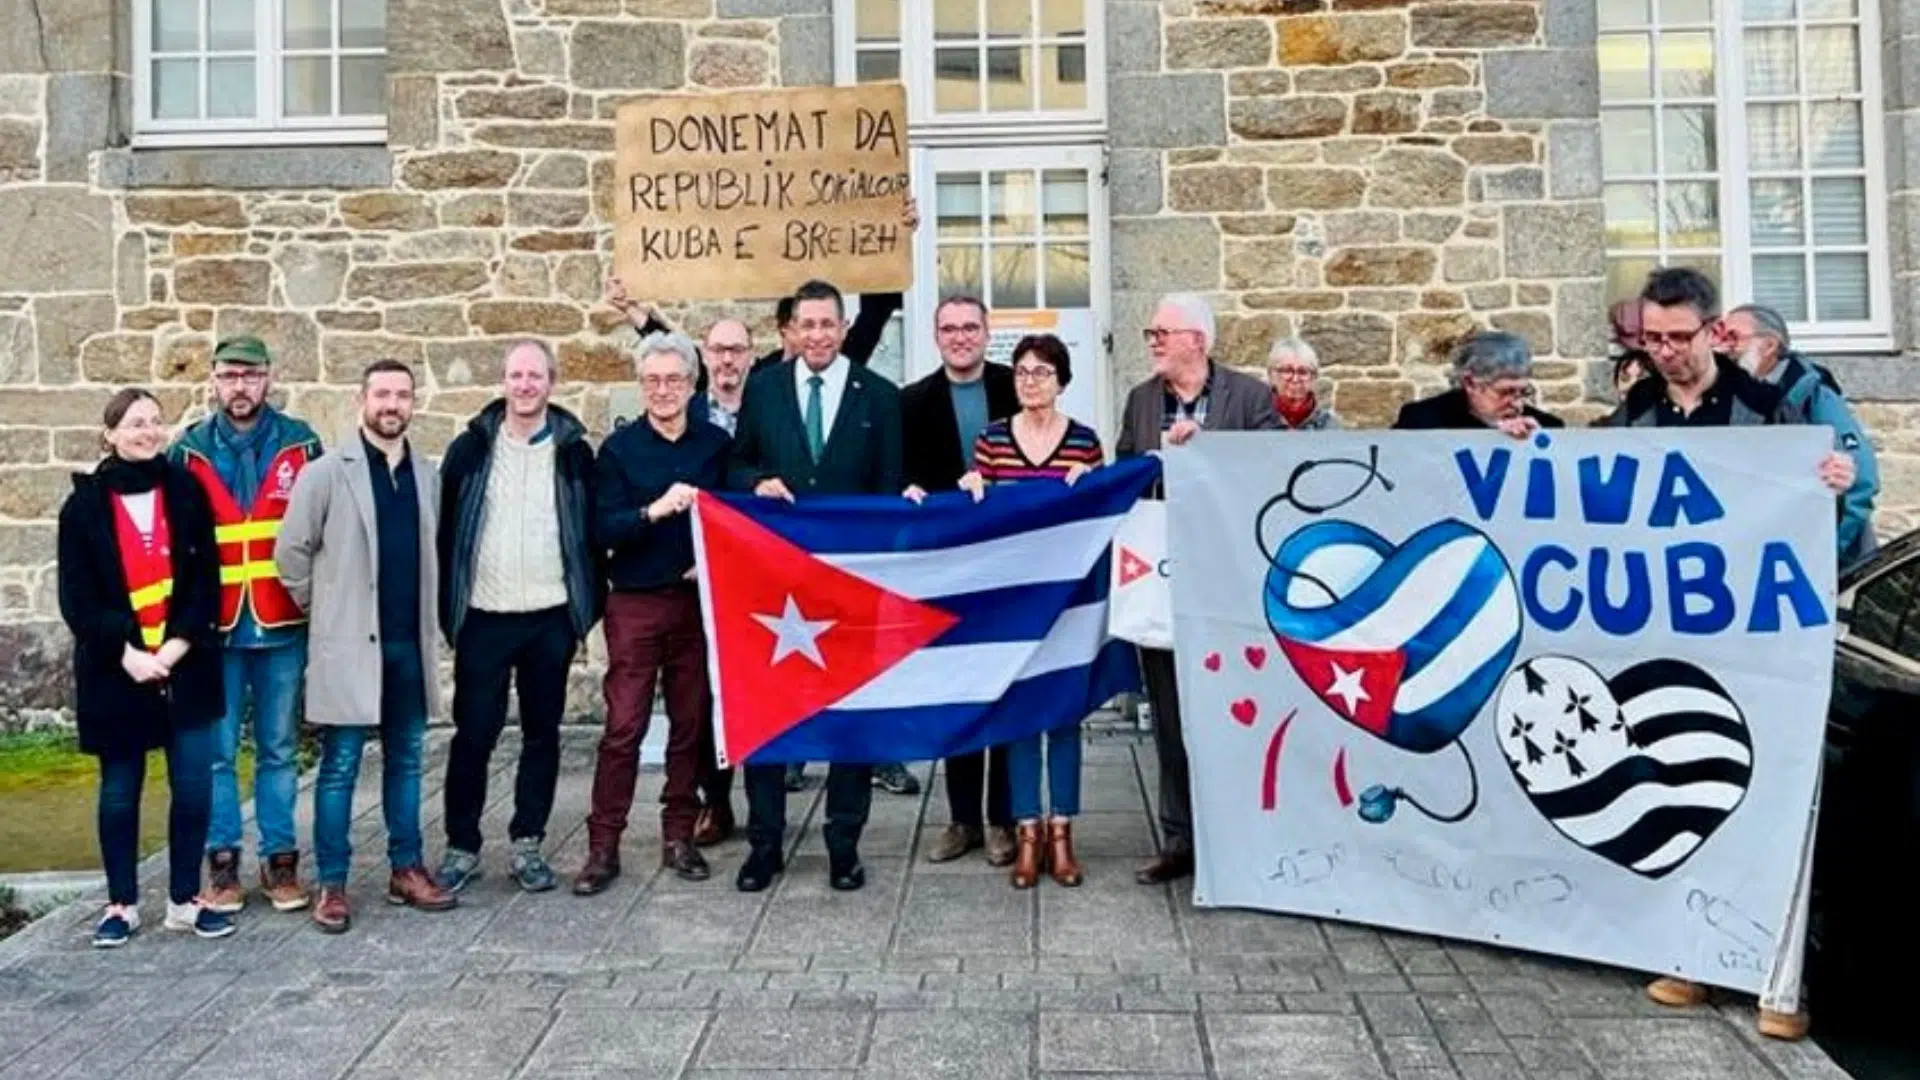 Cuba a accepté d’envoyer des médecins en renfort dans les hôpitaux de Guingamp (Bretagne), où les services sont en difficulté.